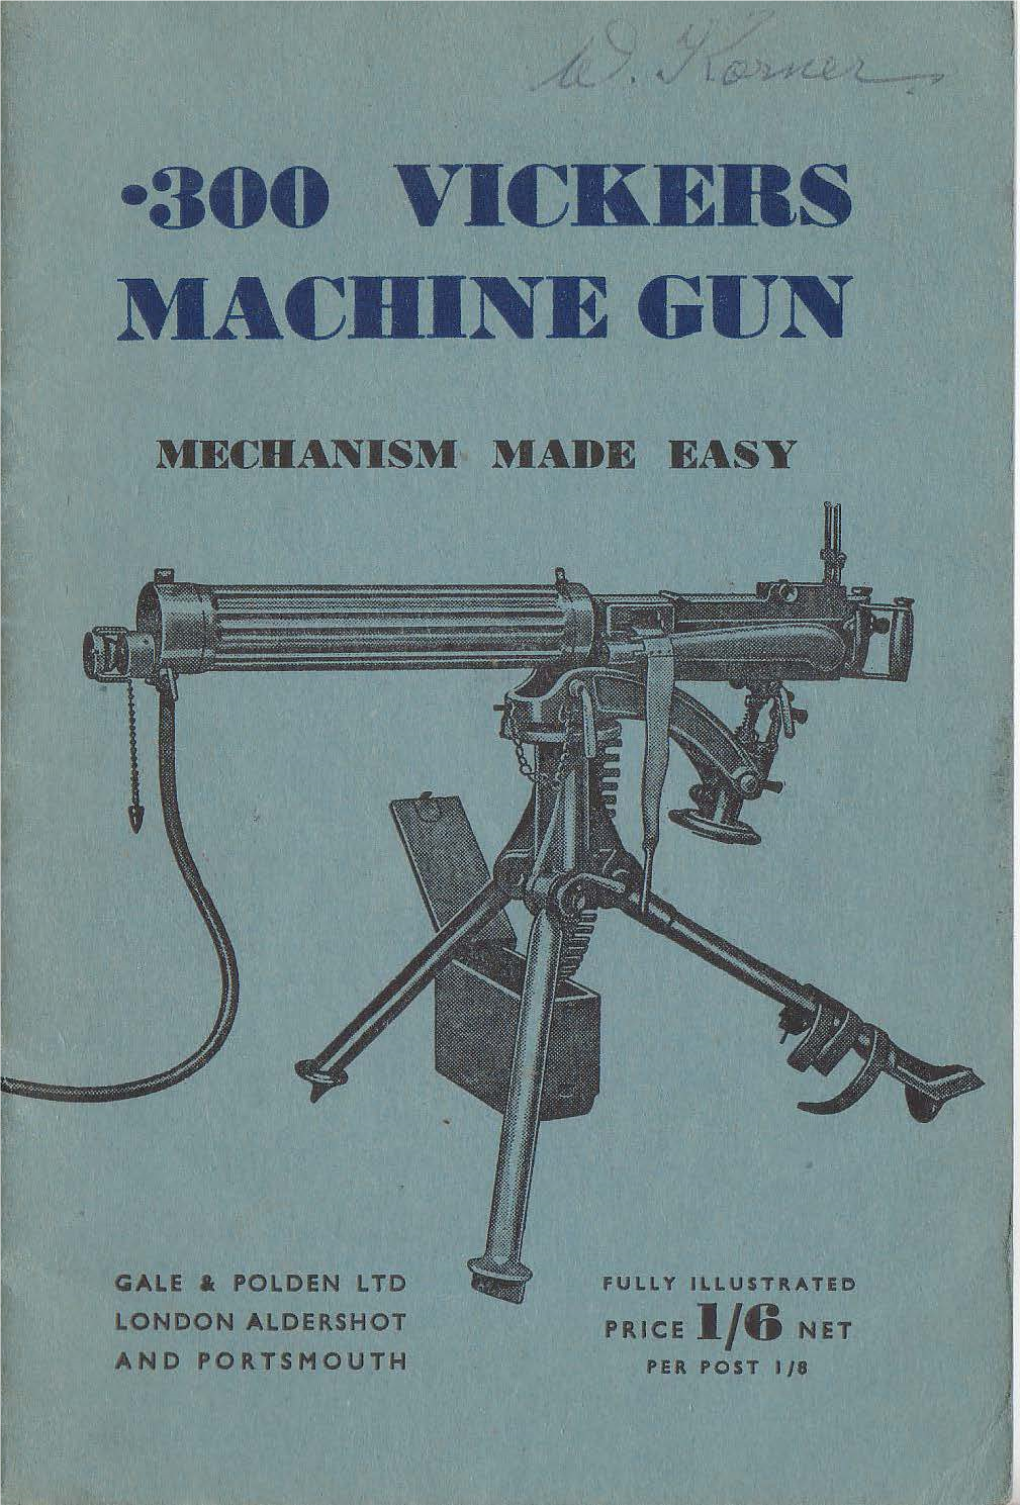 •300 Vickers Machine Gun